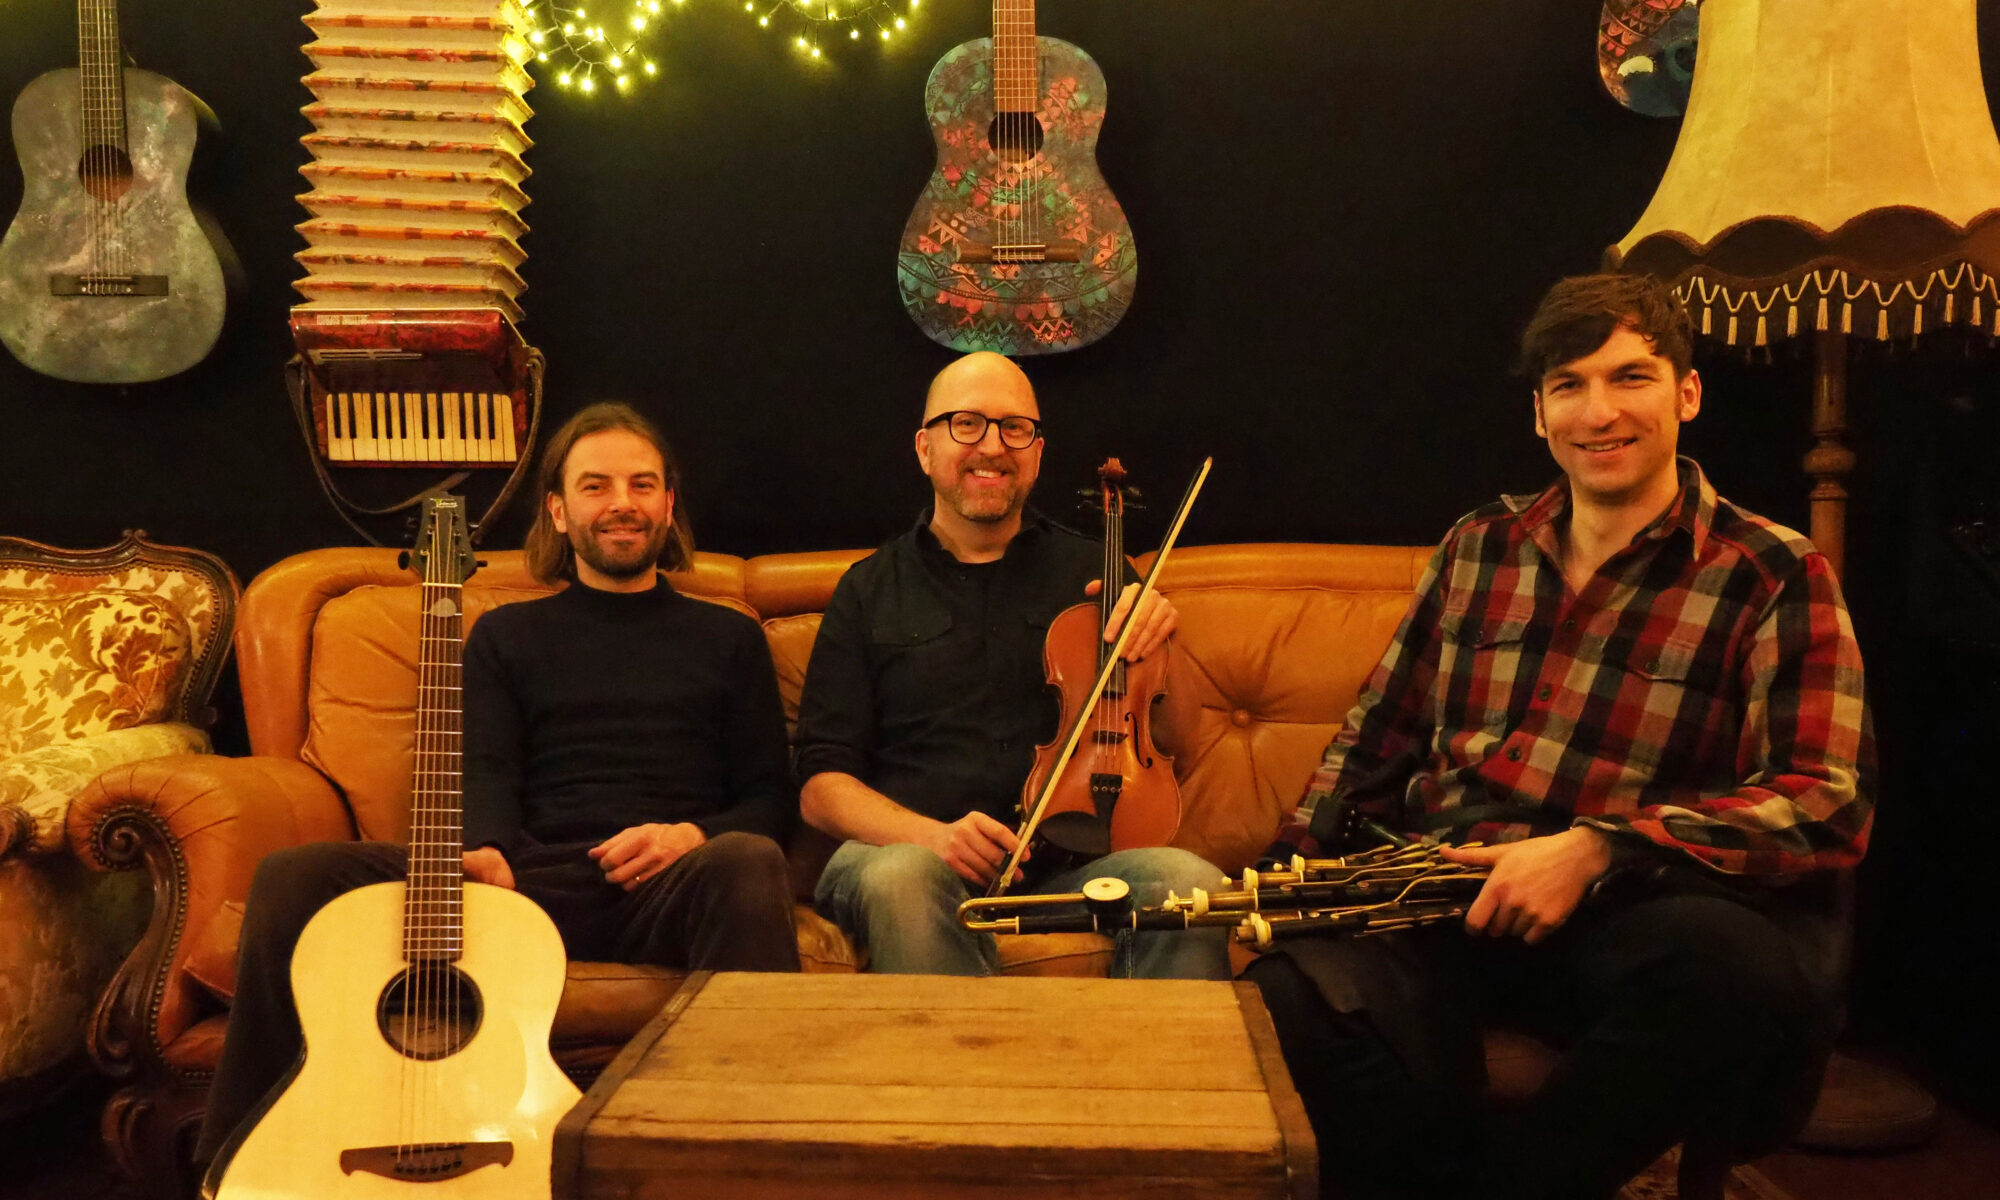 drei irische Musiker sitzen gemütlich auf einer couch mit ihren traditionellen Instrumenten dudelsack, geige und Gitarre dadgad